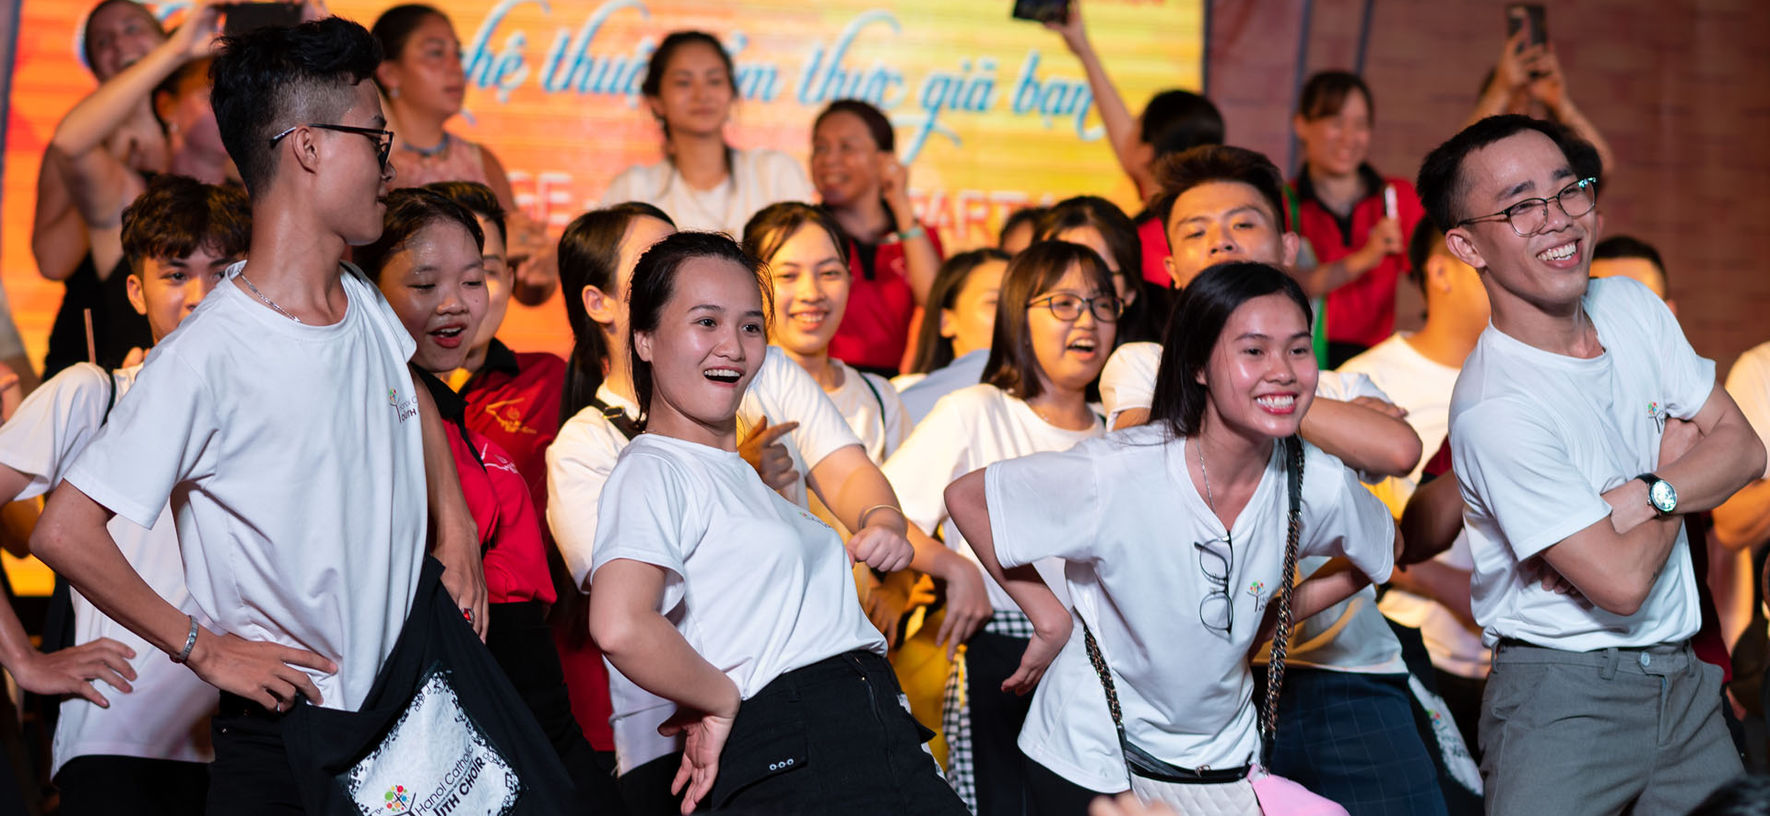 Choir Party in Hoi An, Vietnam © INTERKULTUR